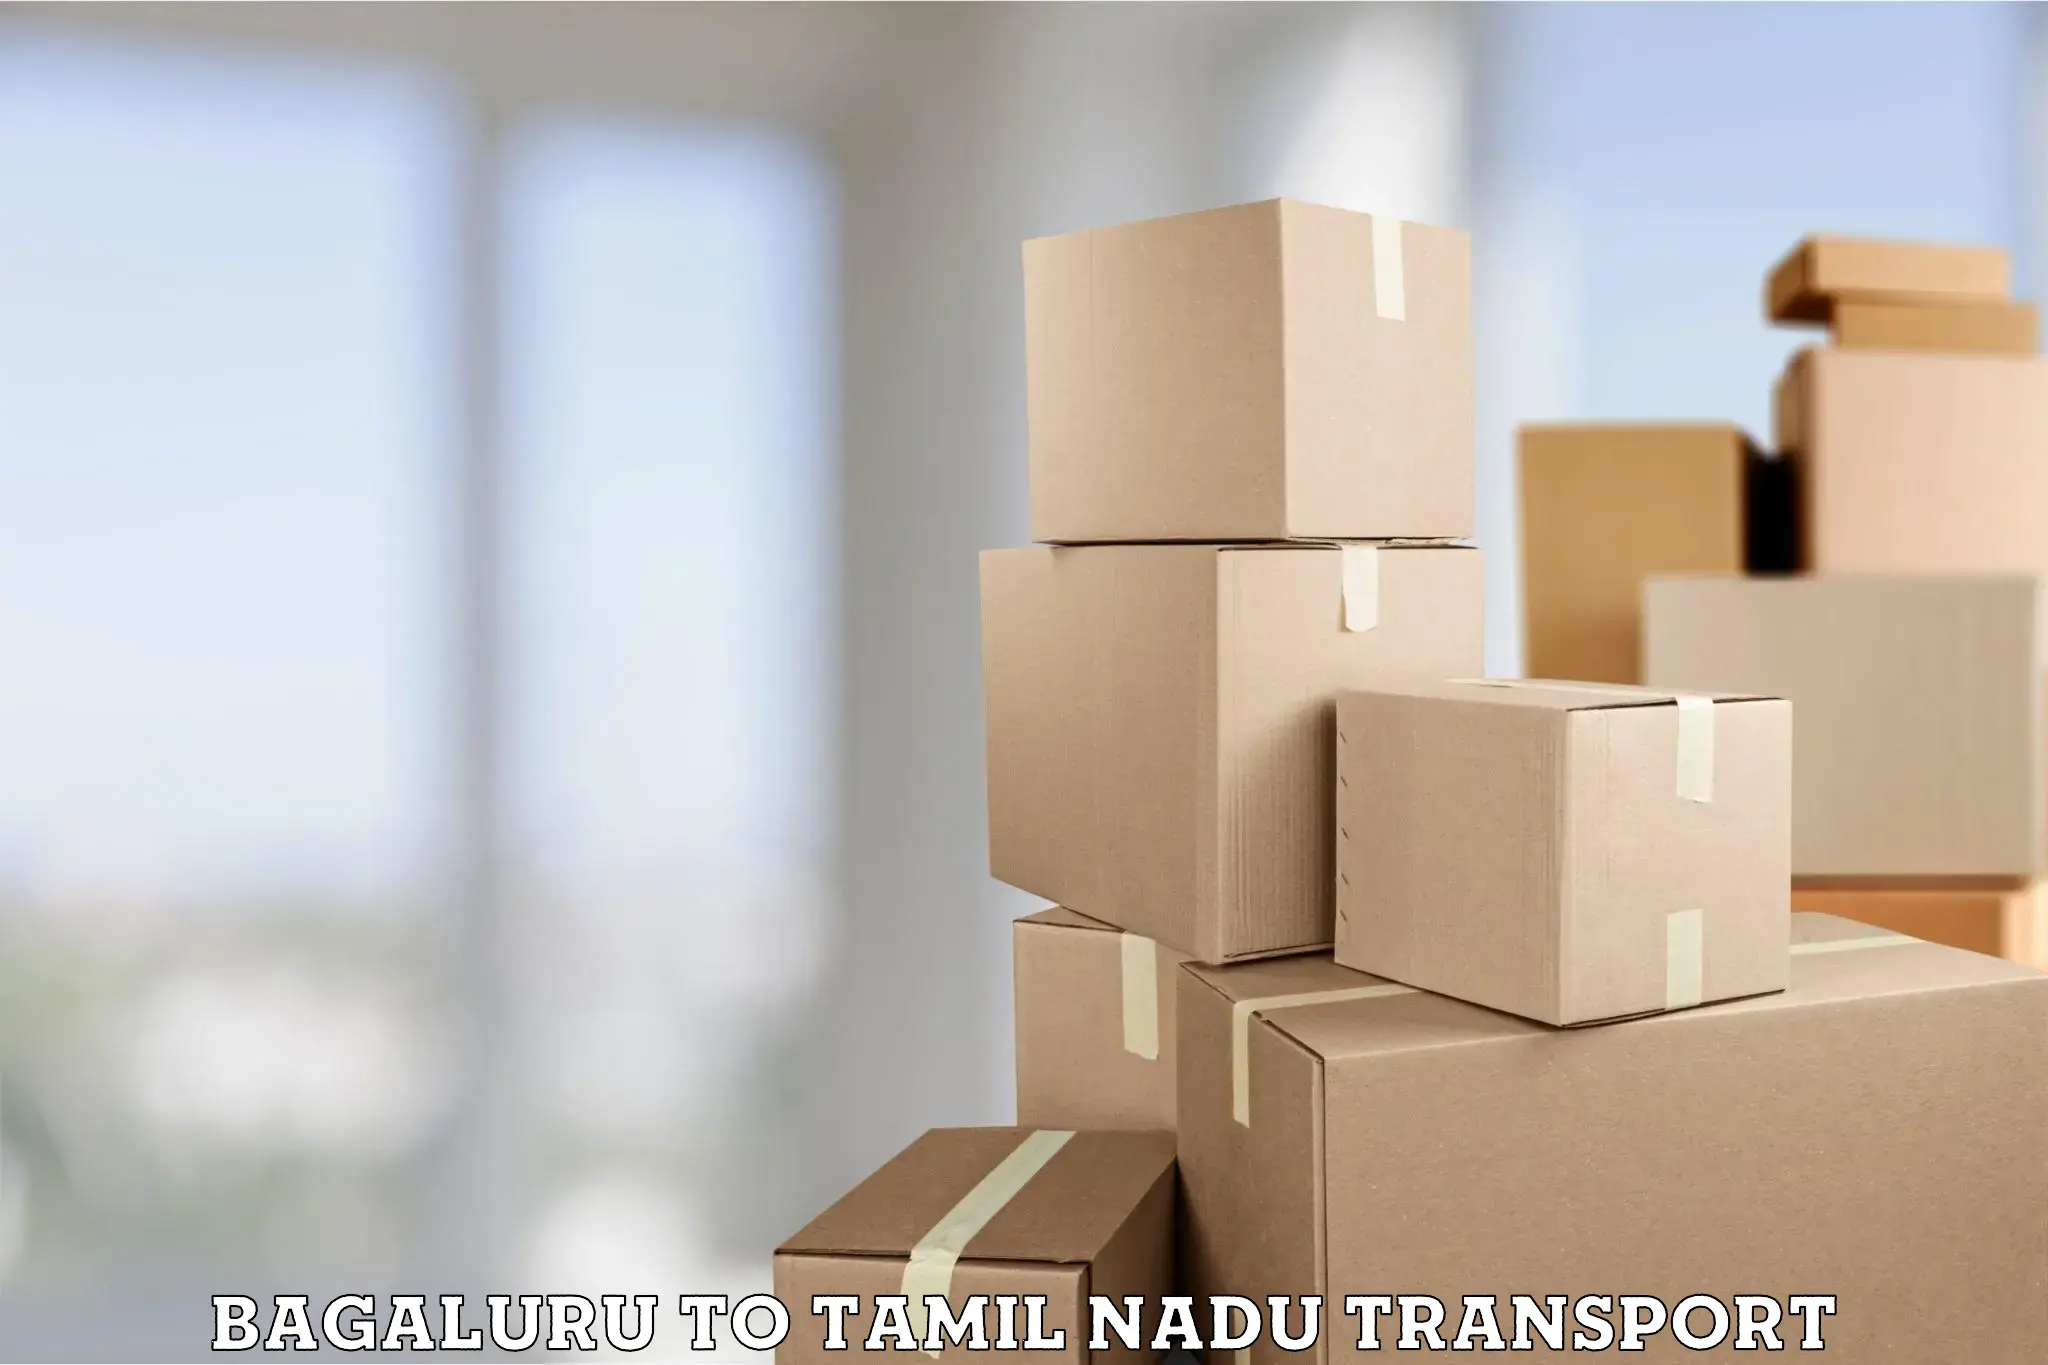 Daily transport service Bagaluru to Tamil Nadu